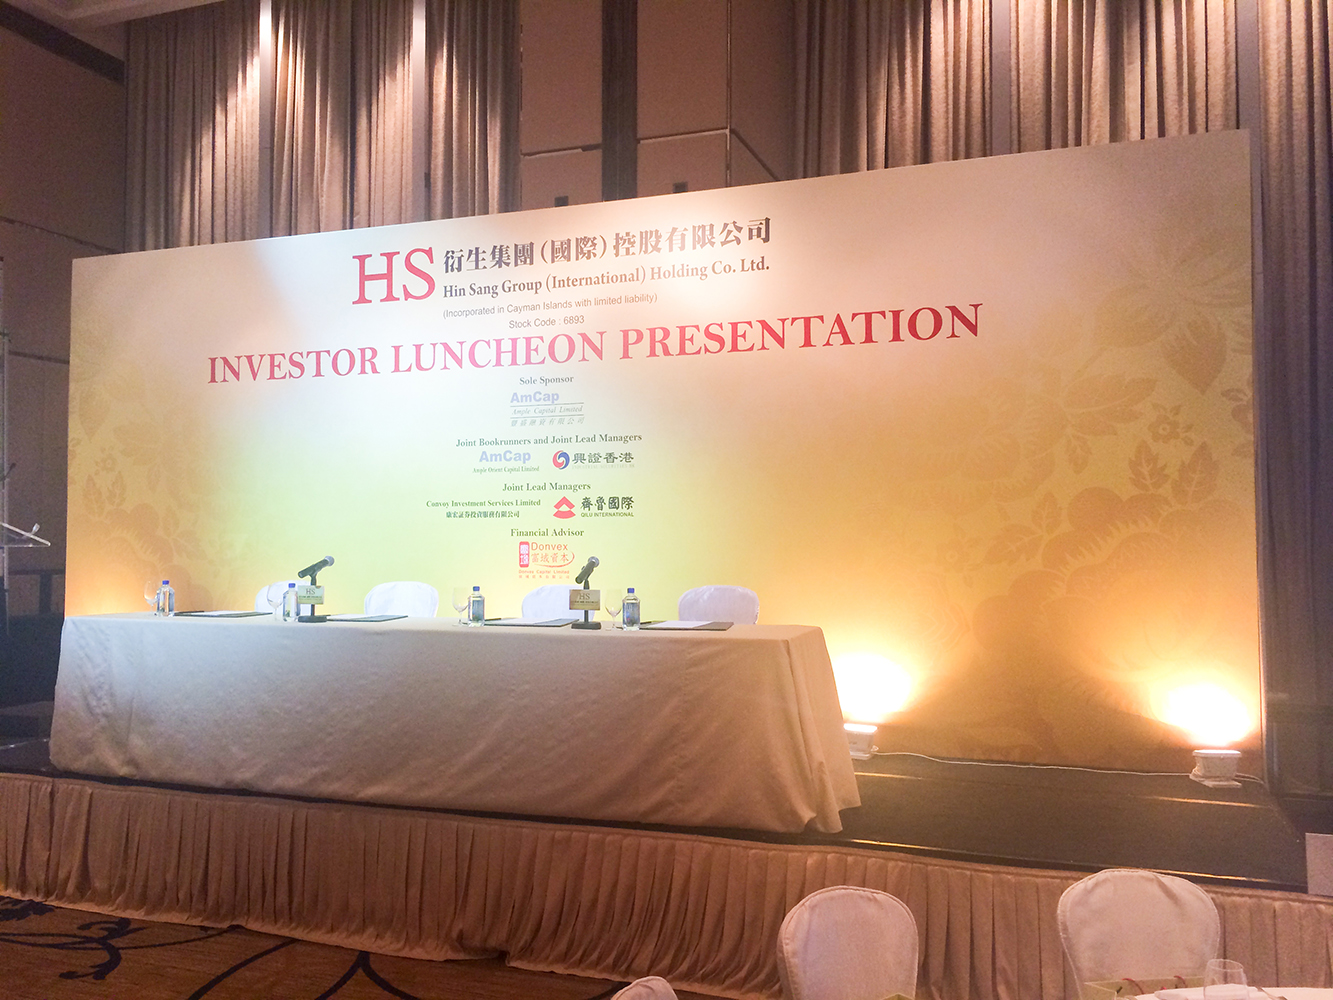 投資者午餐會<br>
      IPO Investor Luncheon Presentation